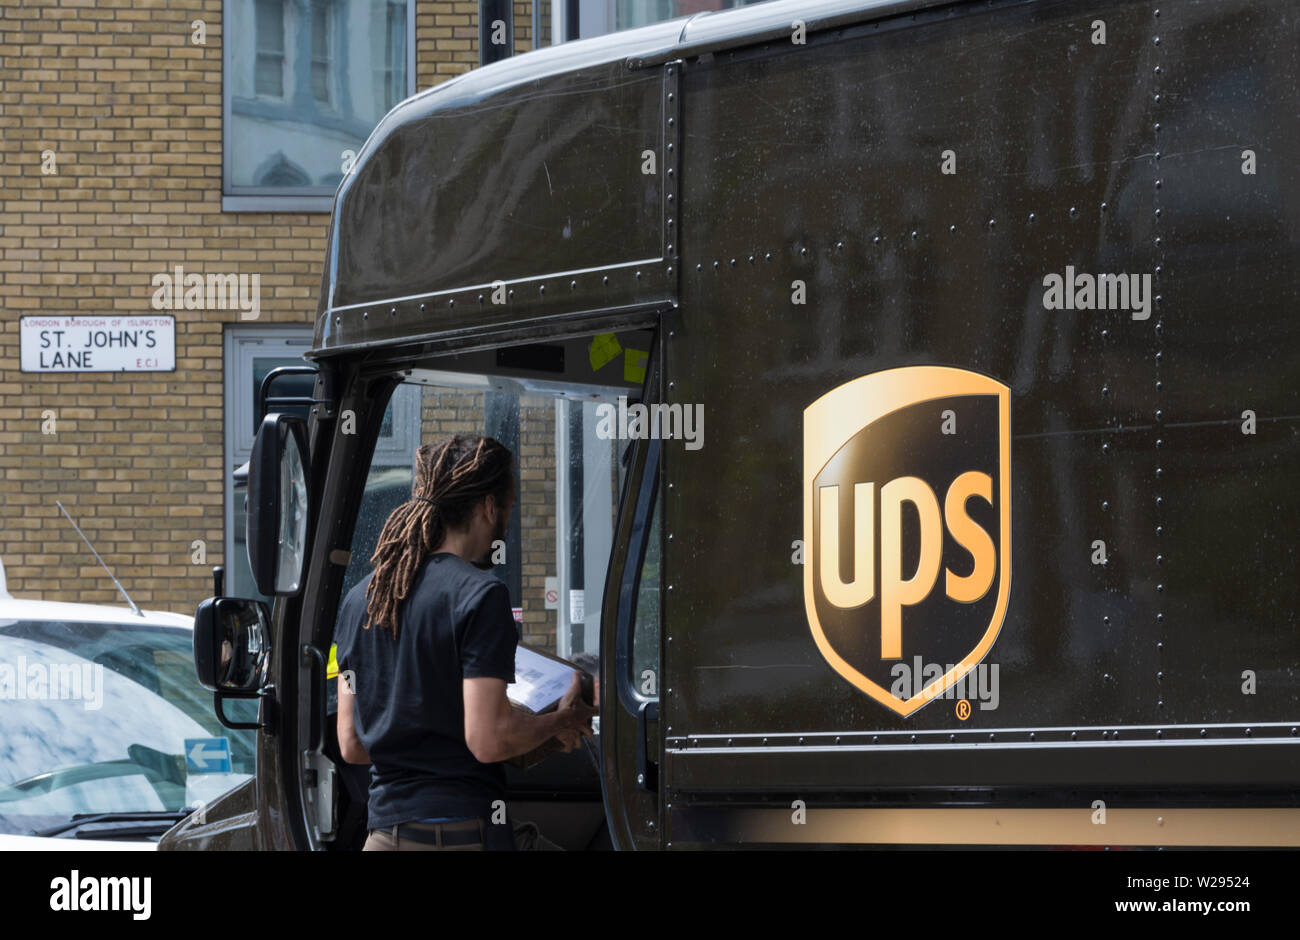 Ein UPS-Lieferwagen (United Parcel Service) und Fahrer auf den Straßen von London, England, Großbritannien Stockfoto